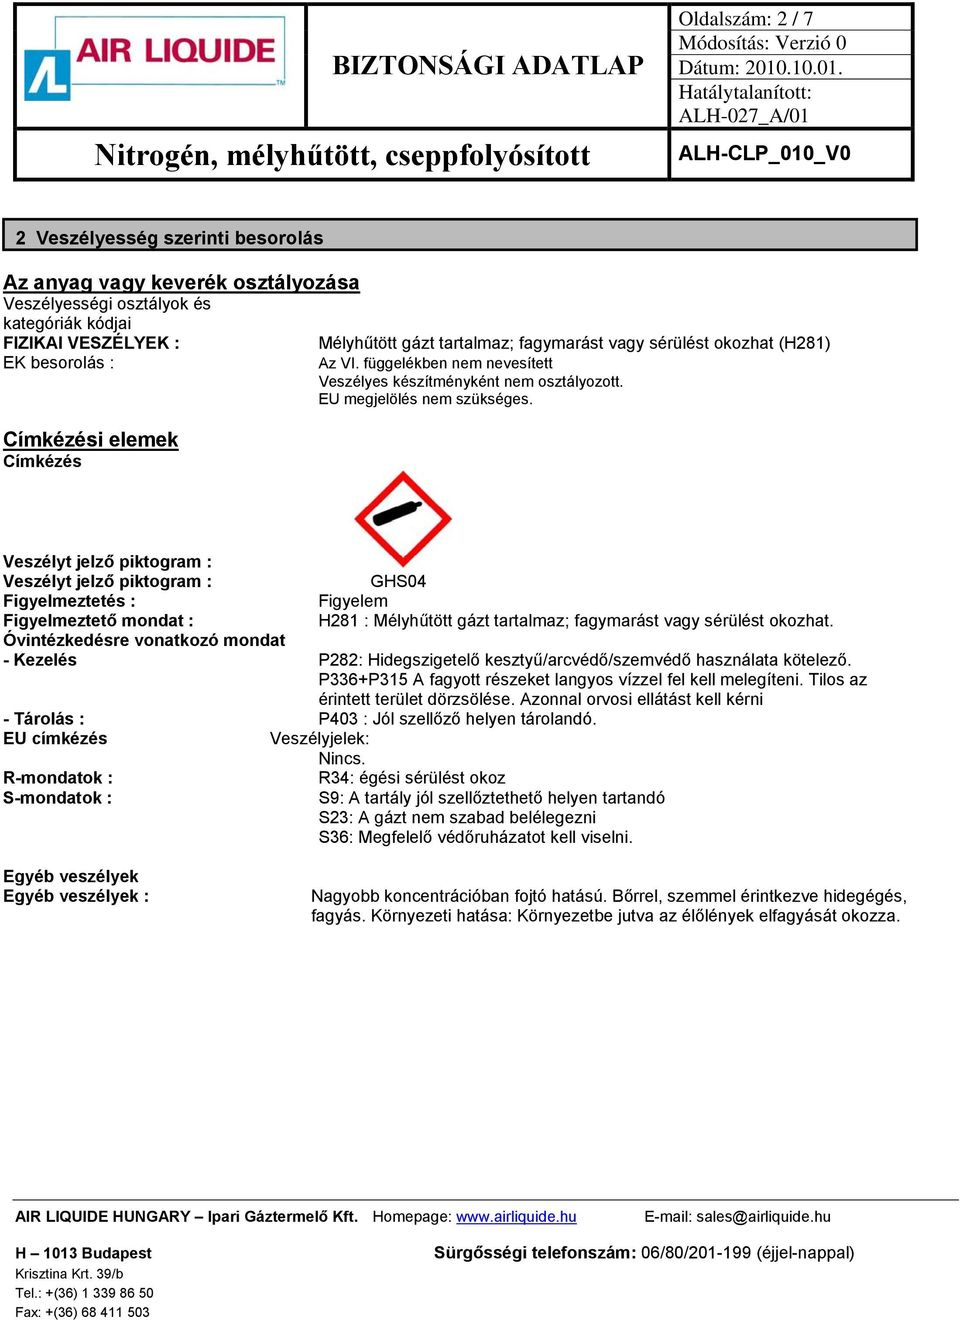 Veszélyt jelző piktogram : Veszélyt jelző piktogram : GHS04 Figyelmeztetés : Figyelem Figyelmeztető mondat : H281 : Mélyhűtött gázt tartalmaz; fagymarást vagy sérülést okozhat.